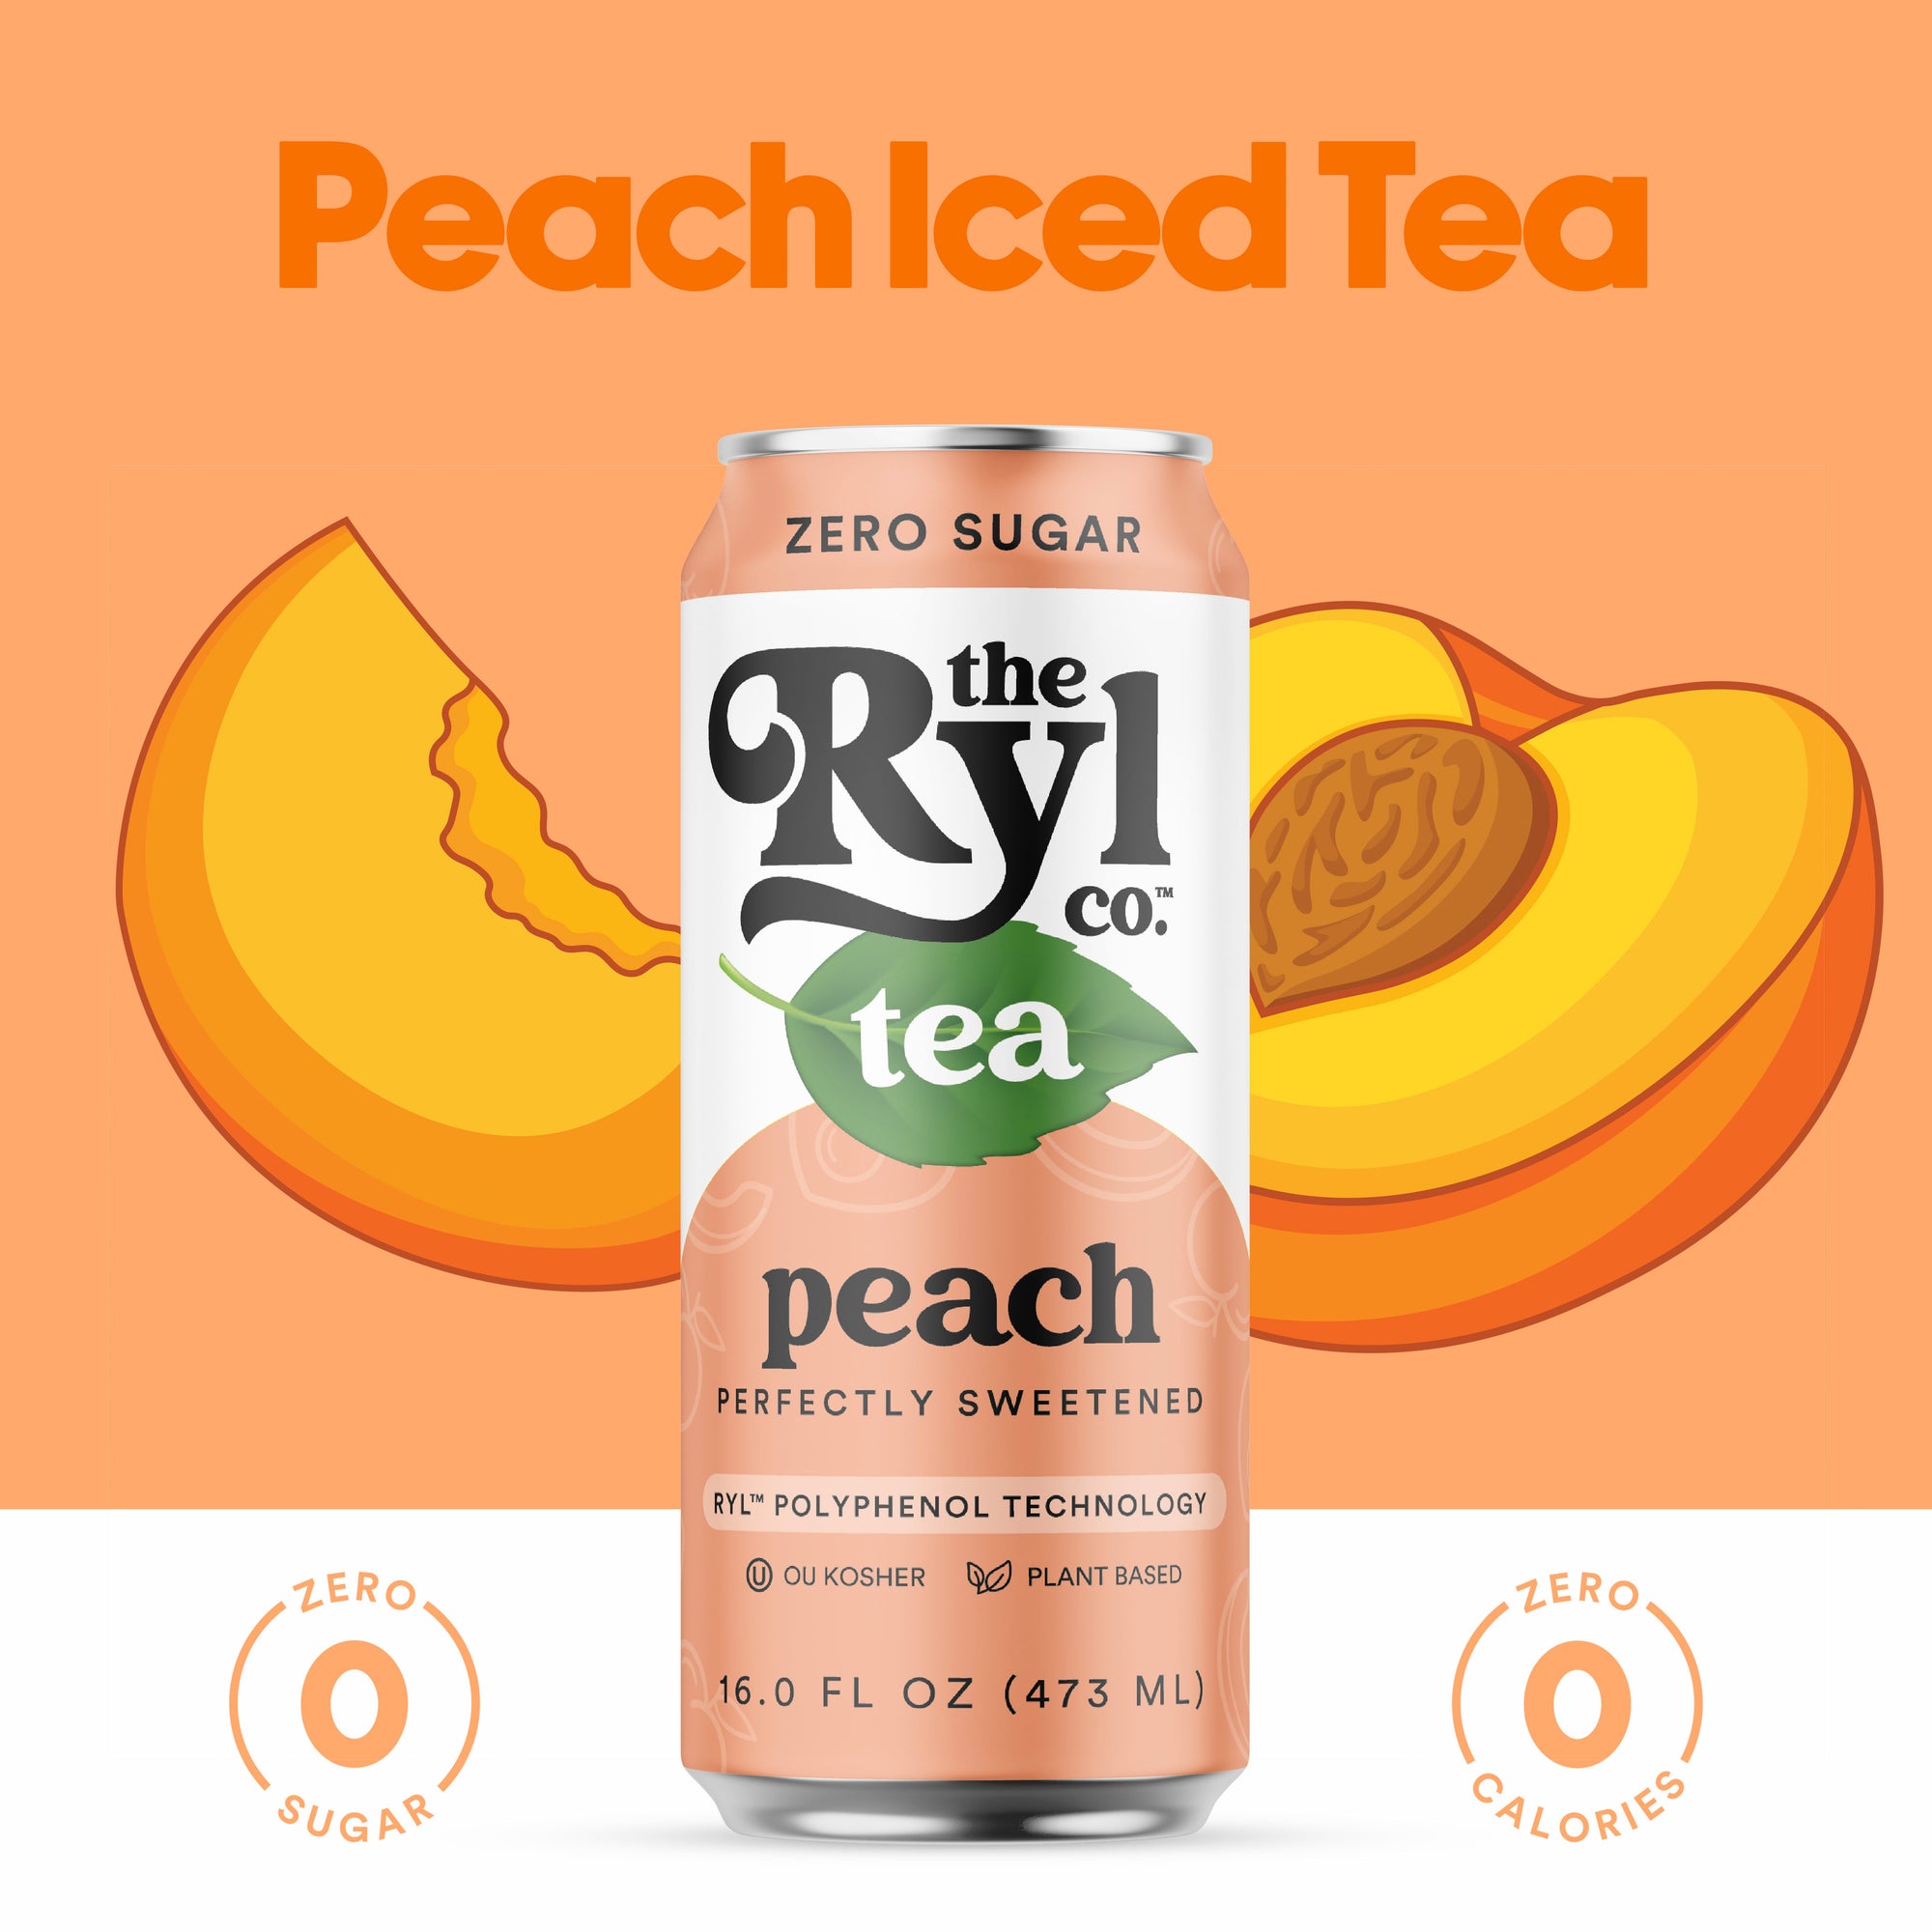 Peach 12 Pack